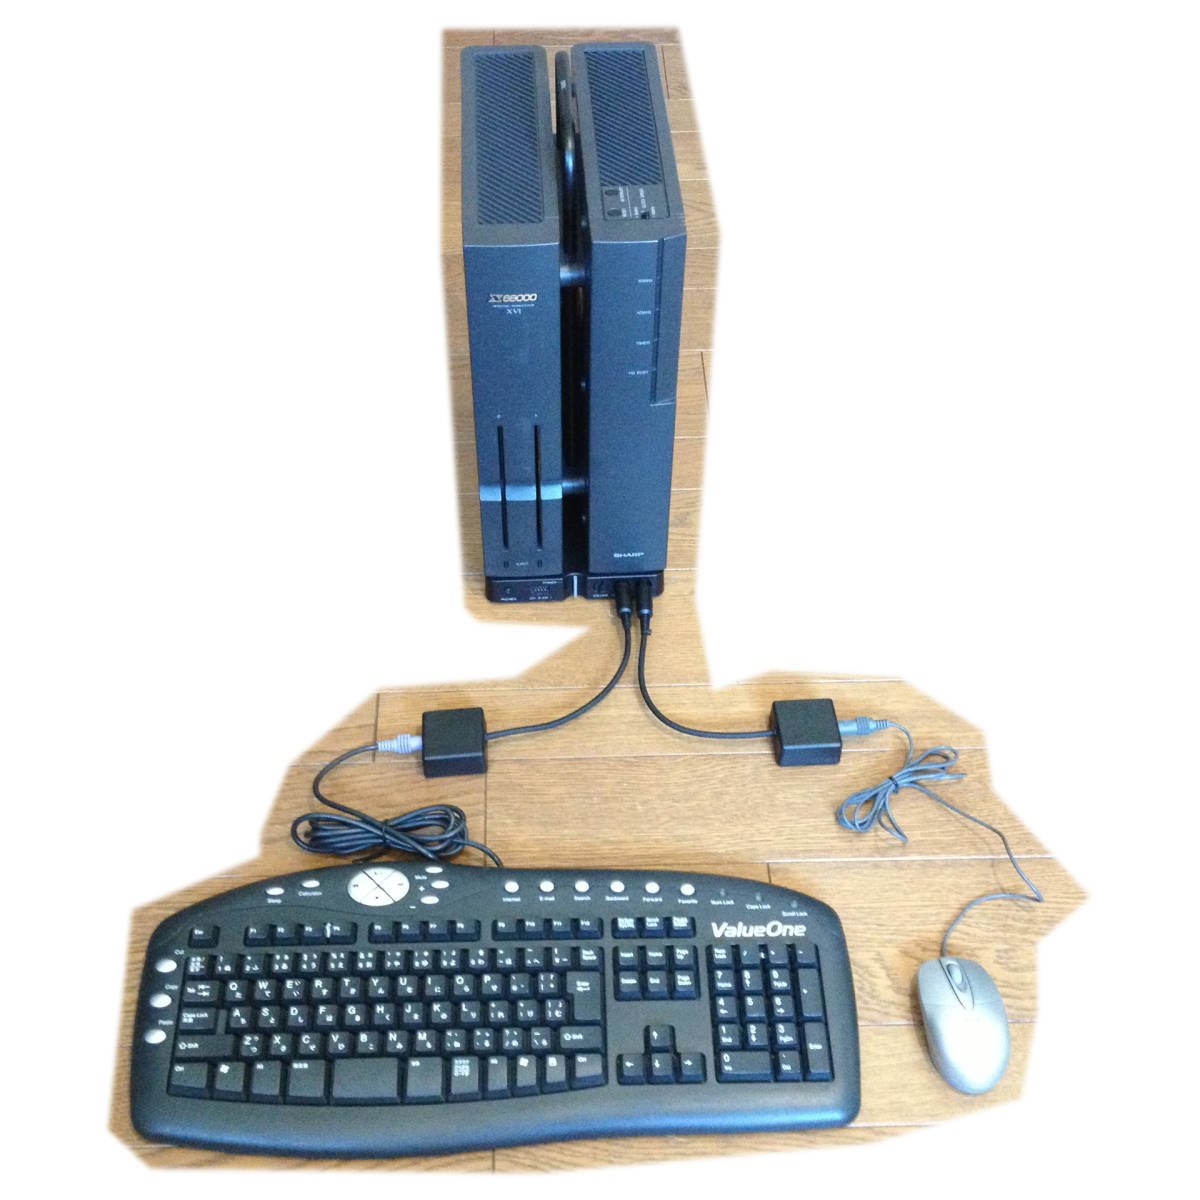  новый товар не использовался *SHARP X68000 серии .PS2 клавиатура . подключение делать поэтому. изменение машина *